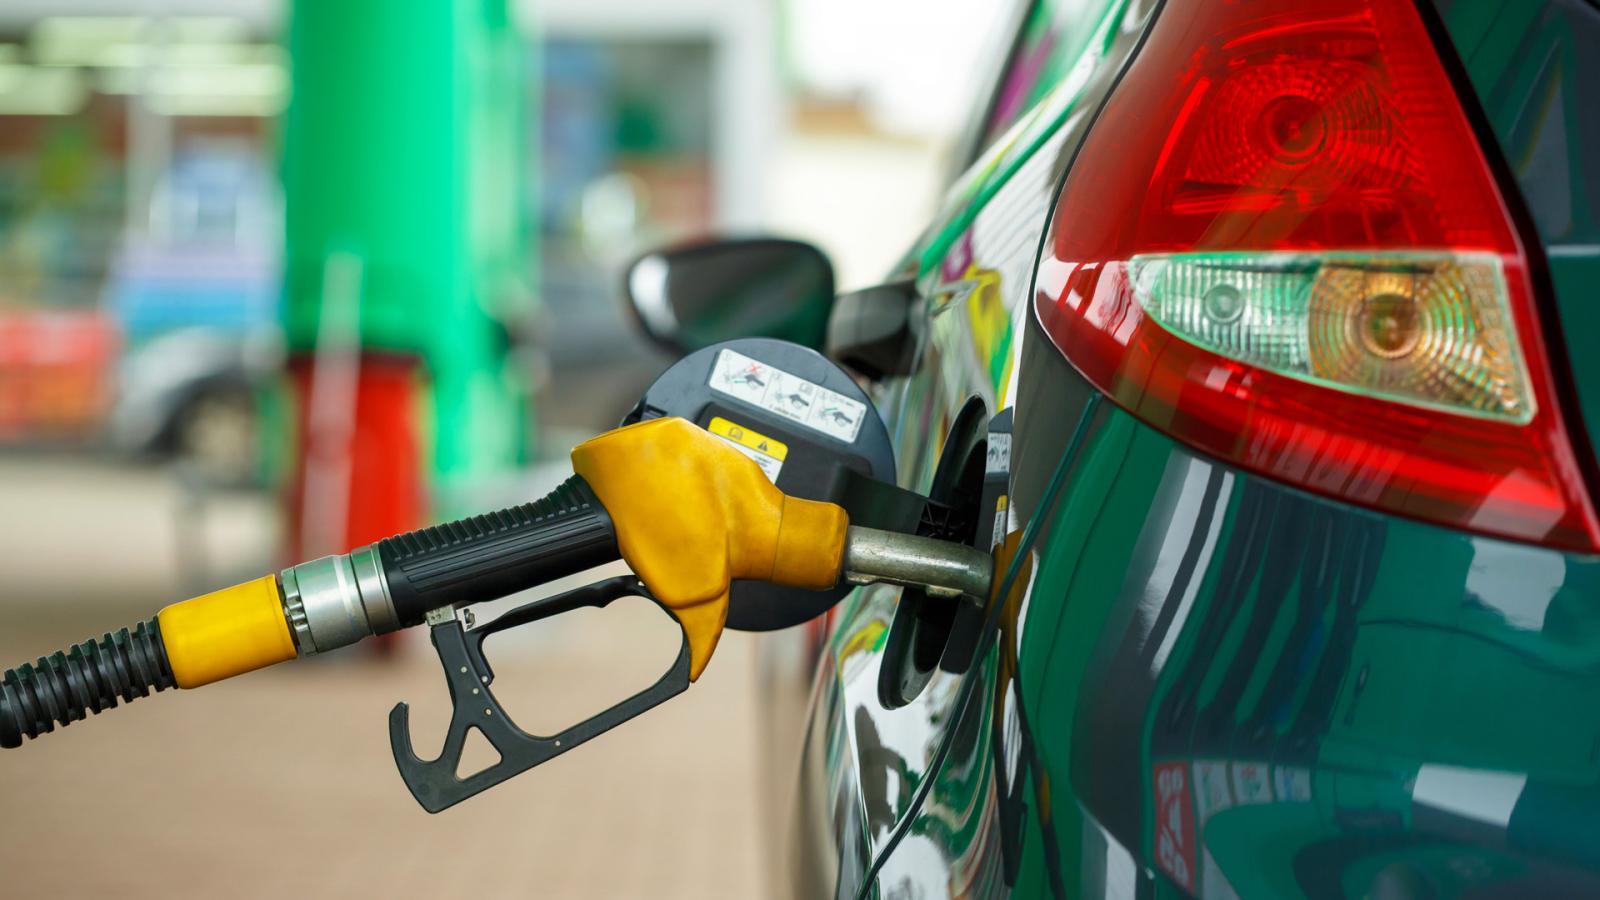 Λάρισα: Συνεχίζει να "καλπάζει" η τιμή της βενζίνης - Μειωμένη η κατανάλωση 